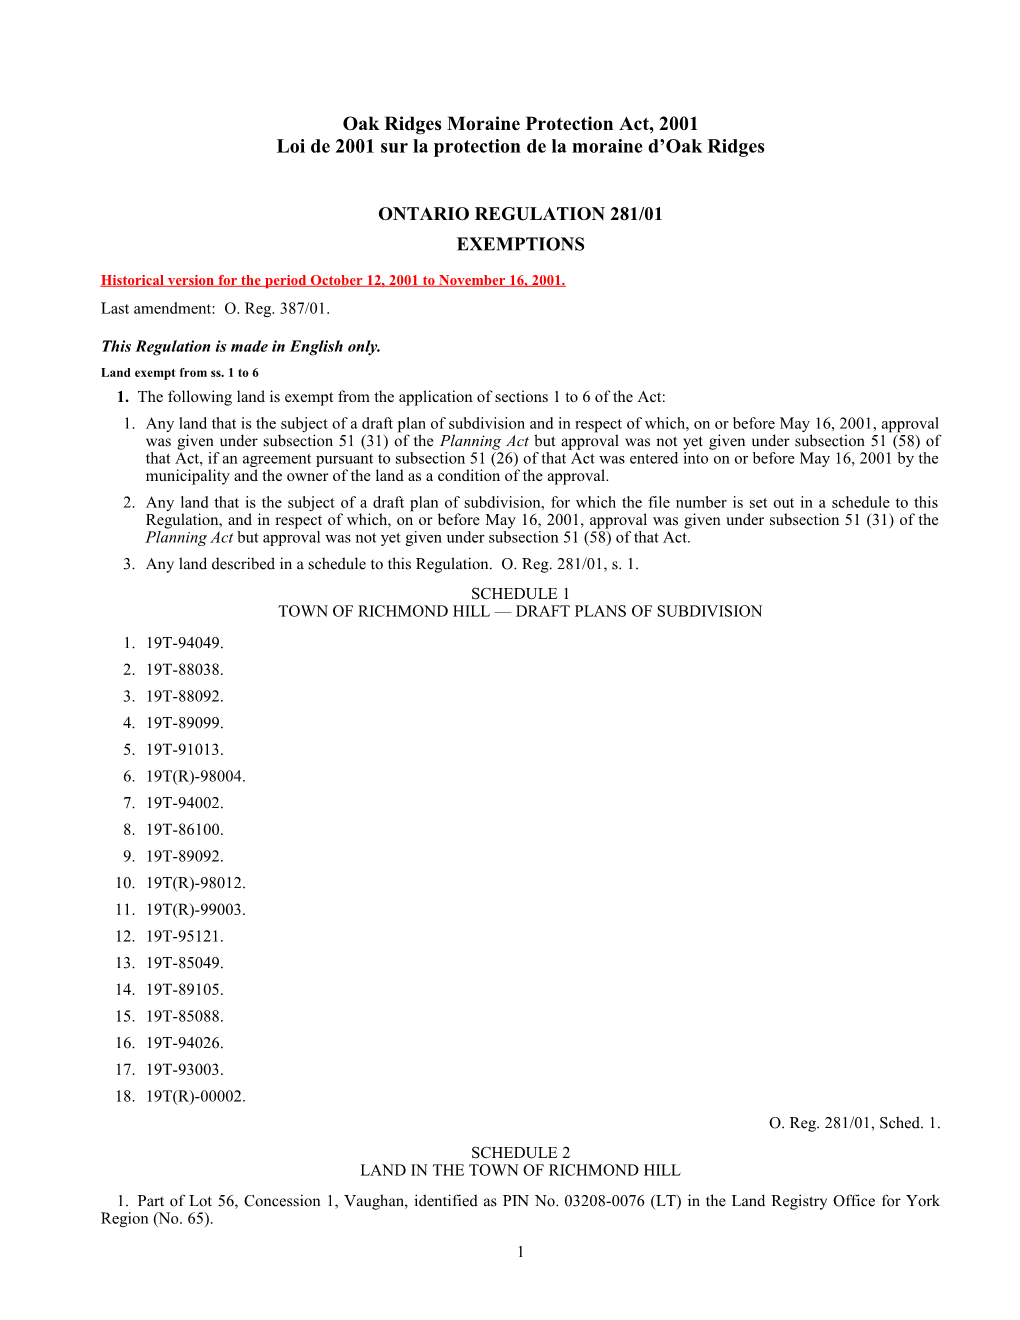 Oak Ridges Moraine Protection Act, 2001 - O. Reg. 281/01